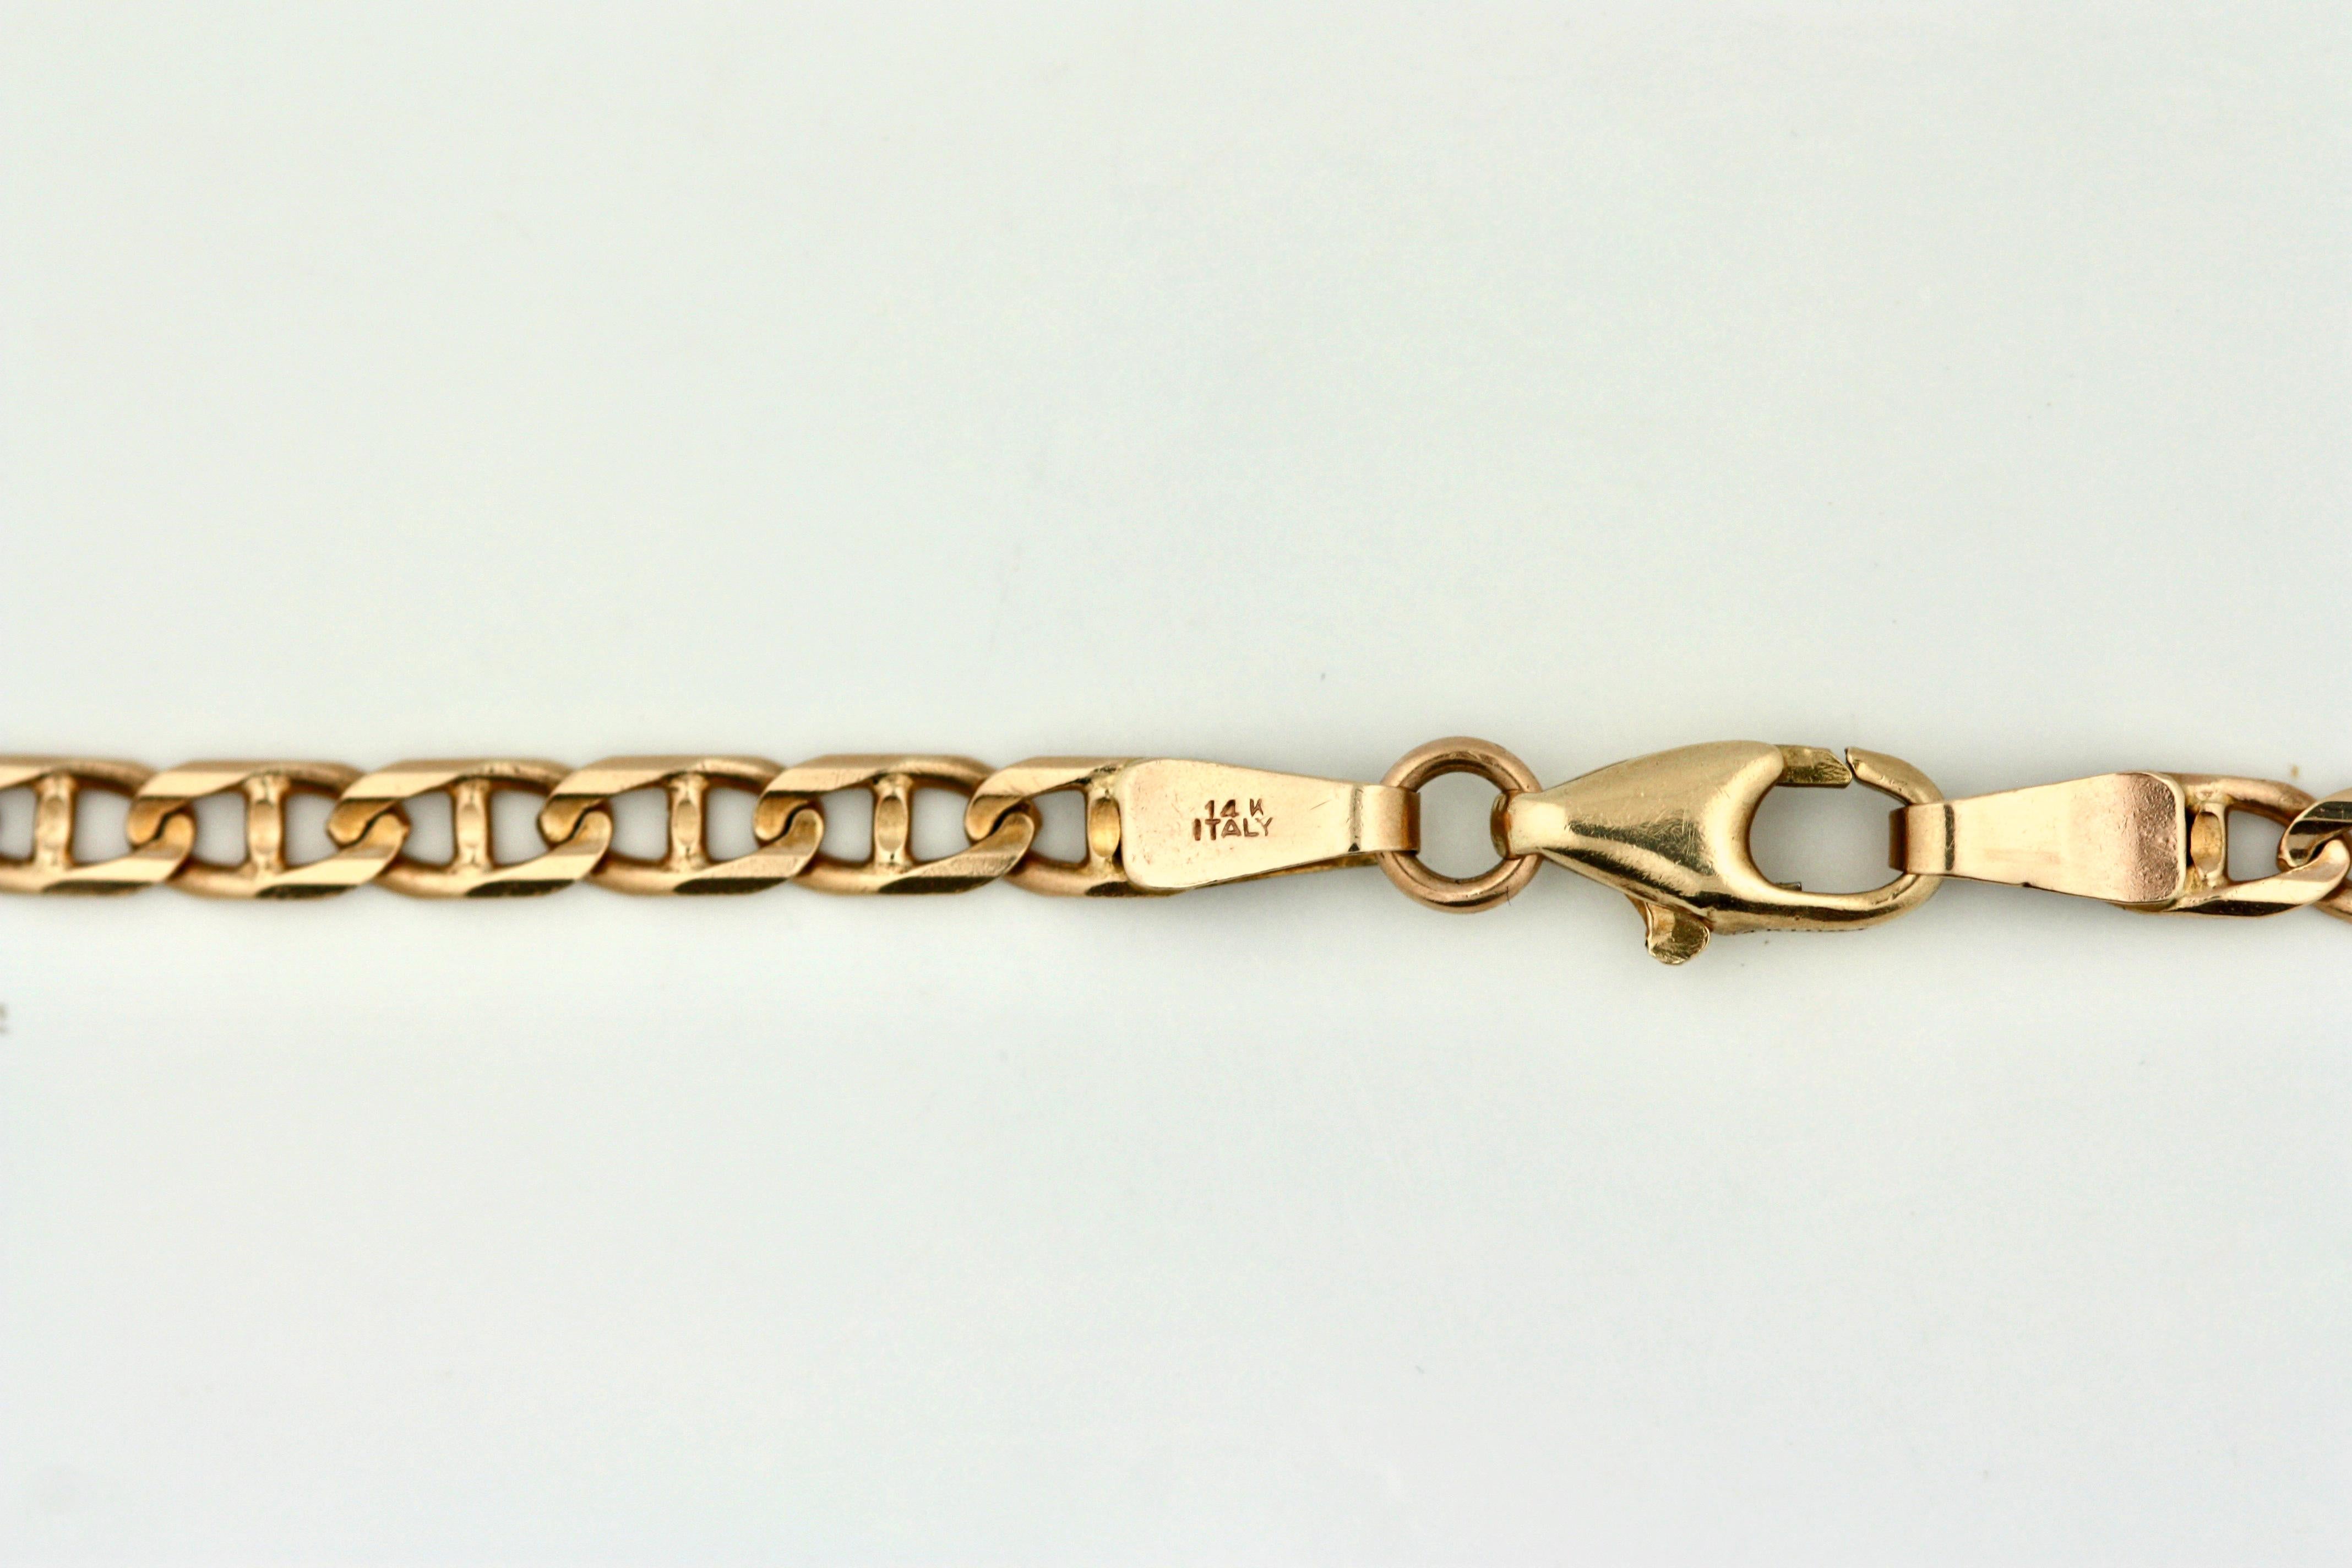 Gold-Halskette
Besteht aus länglichen Goldgliedern.
Länge 24 Zoll
14 Karat Gold
Bruttogewicht etwa 9.1 dwts
